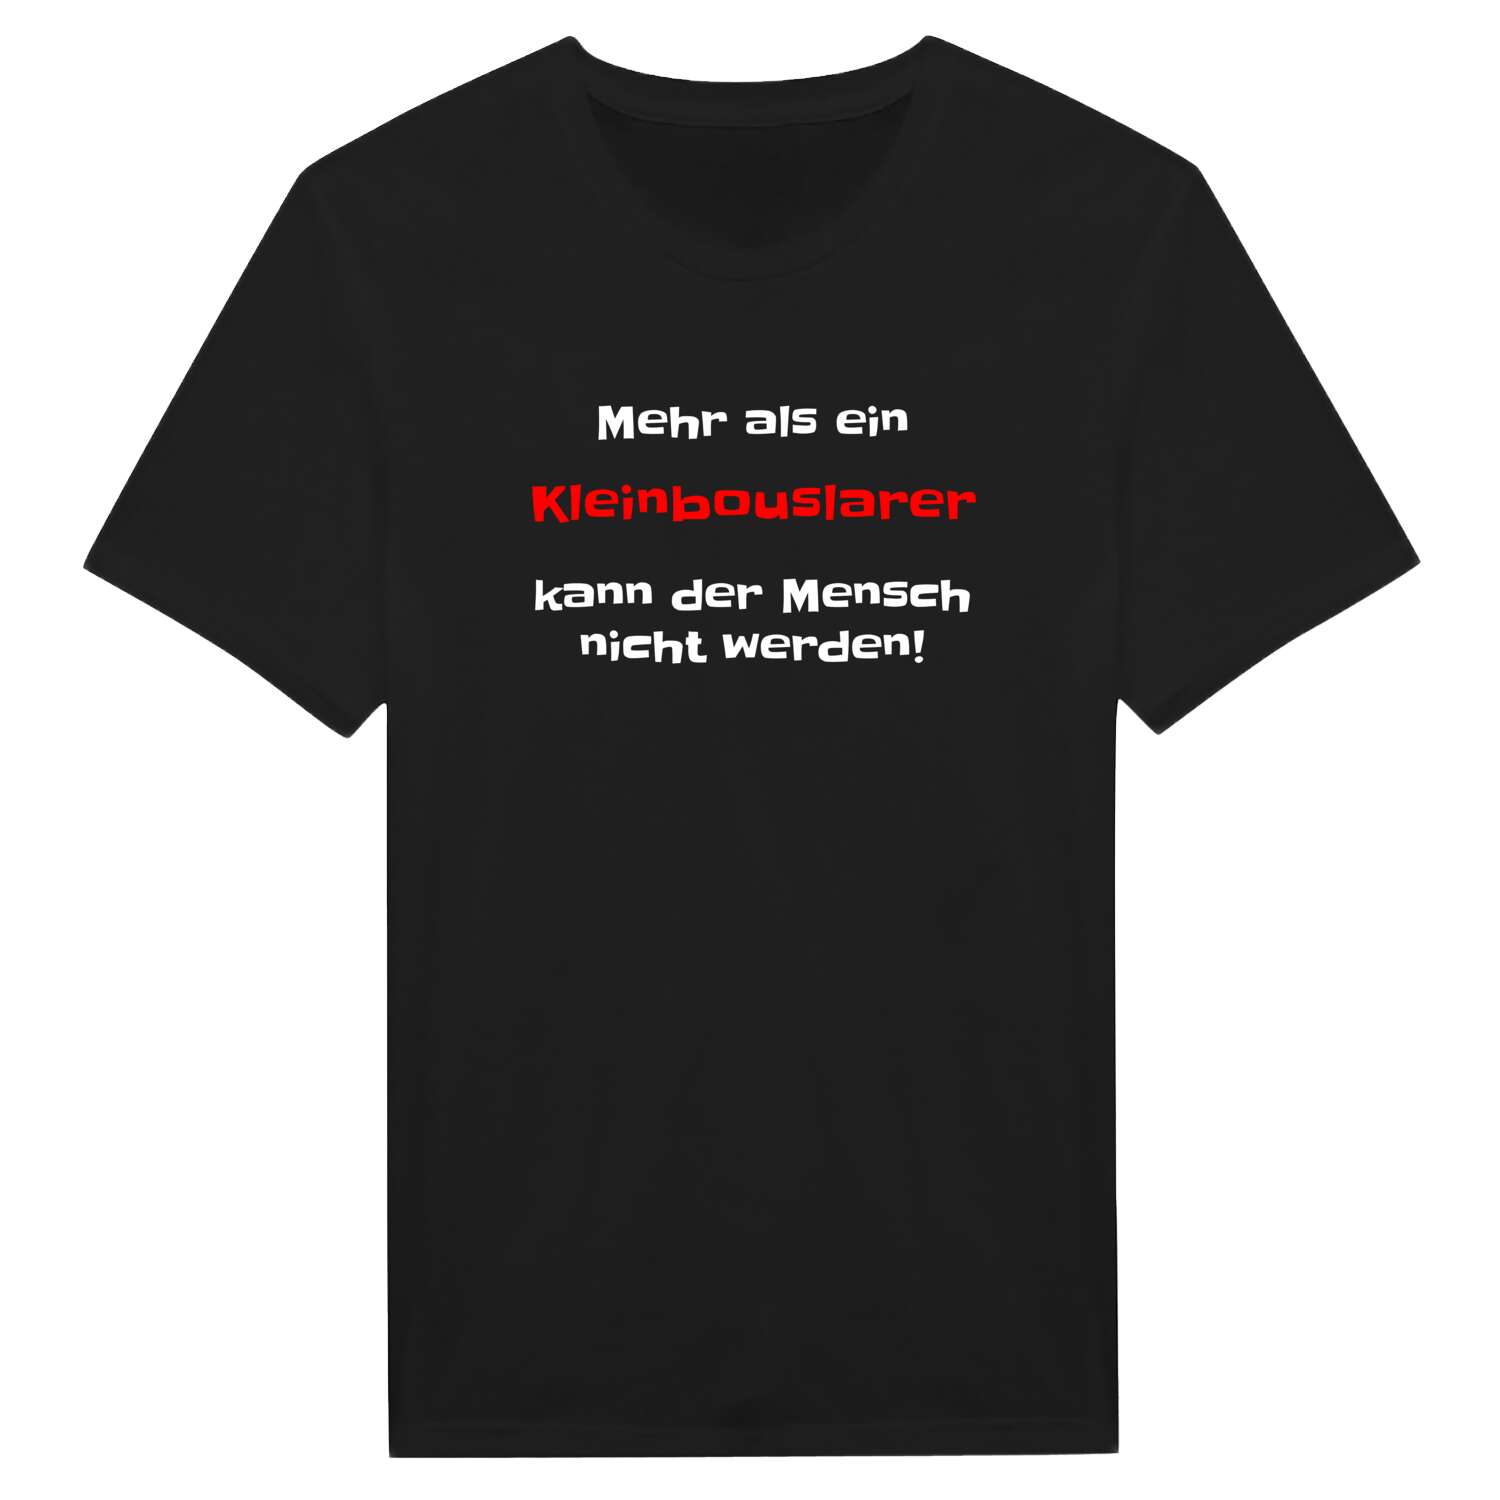 Kleinbouslar T-Shirt »Mehr als ein«